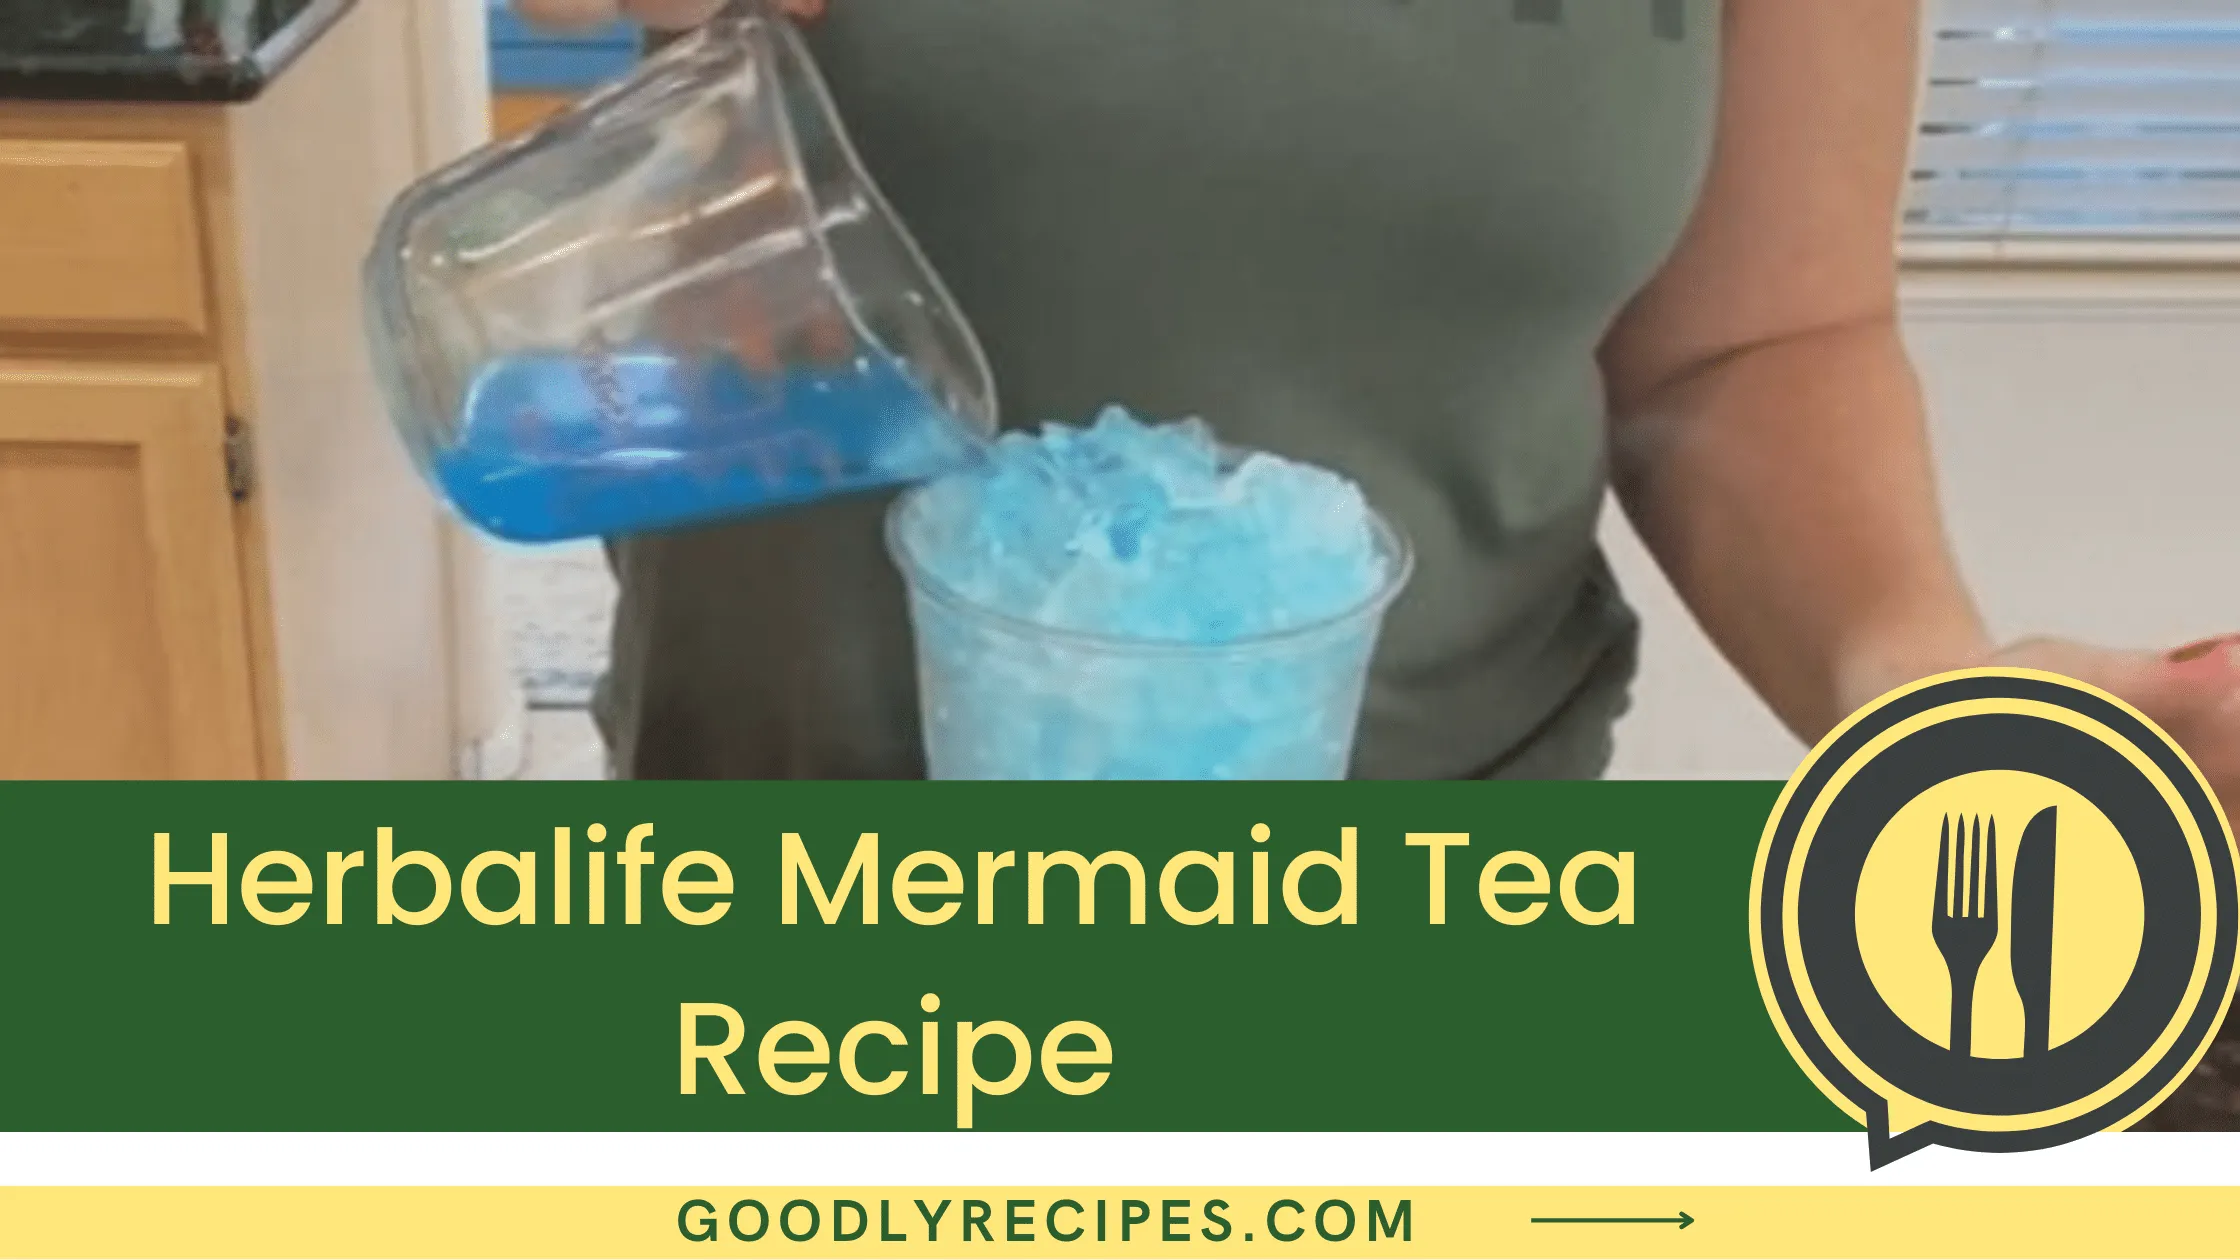 Herbalife Mermaid Tea Recipe - For Food Lovers